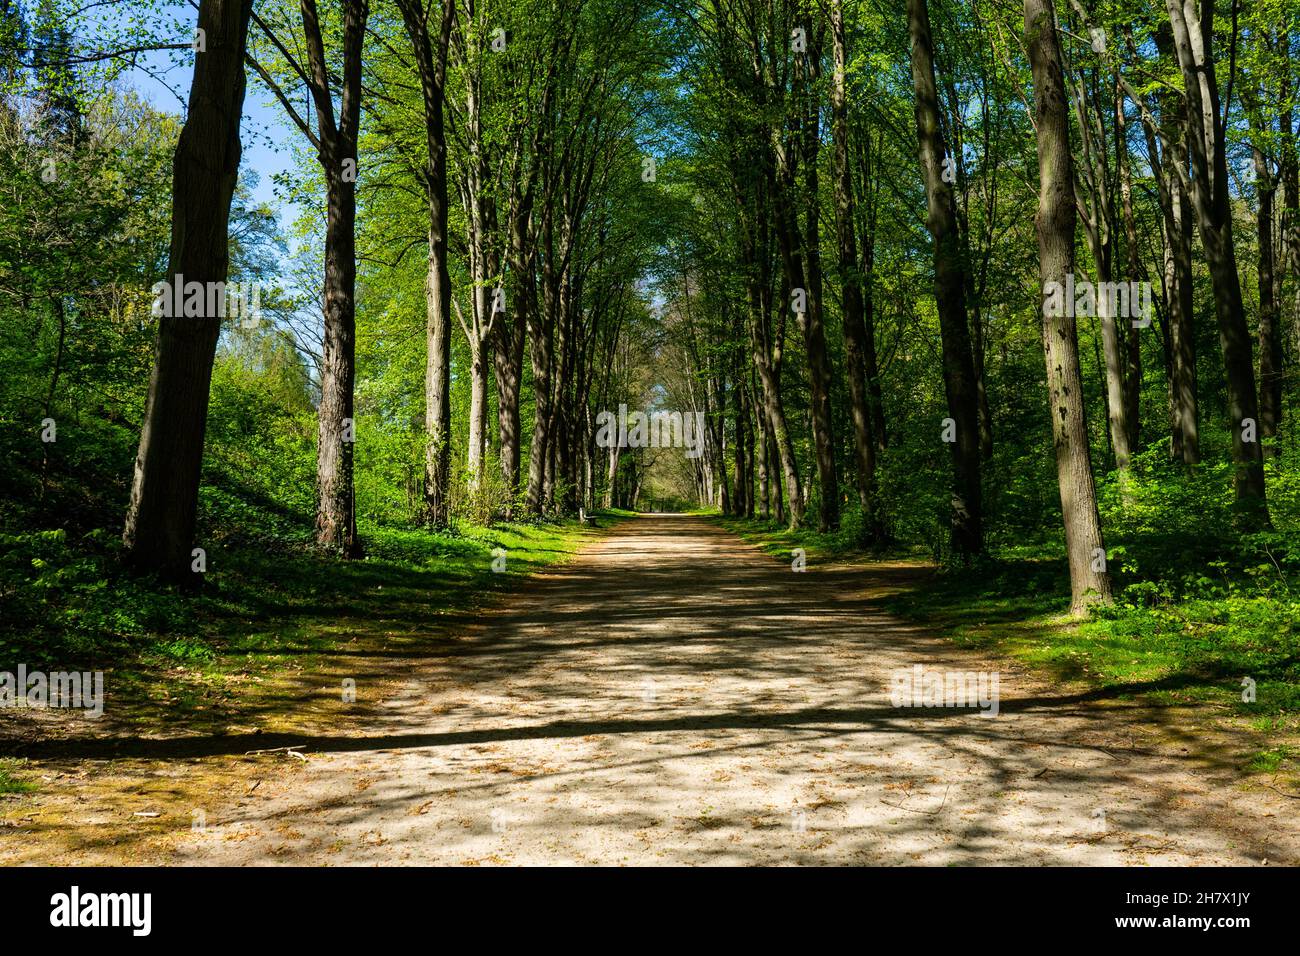 Ein Gehweg im Naturpark, umgeben von Bäumen. Stock Photo